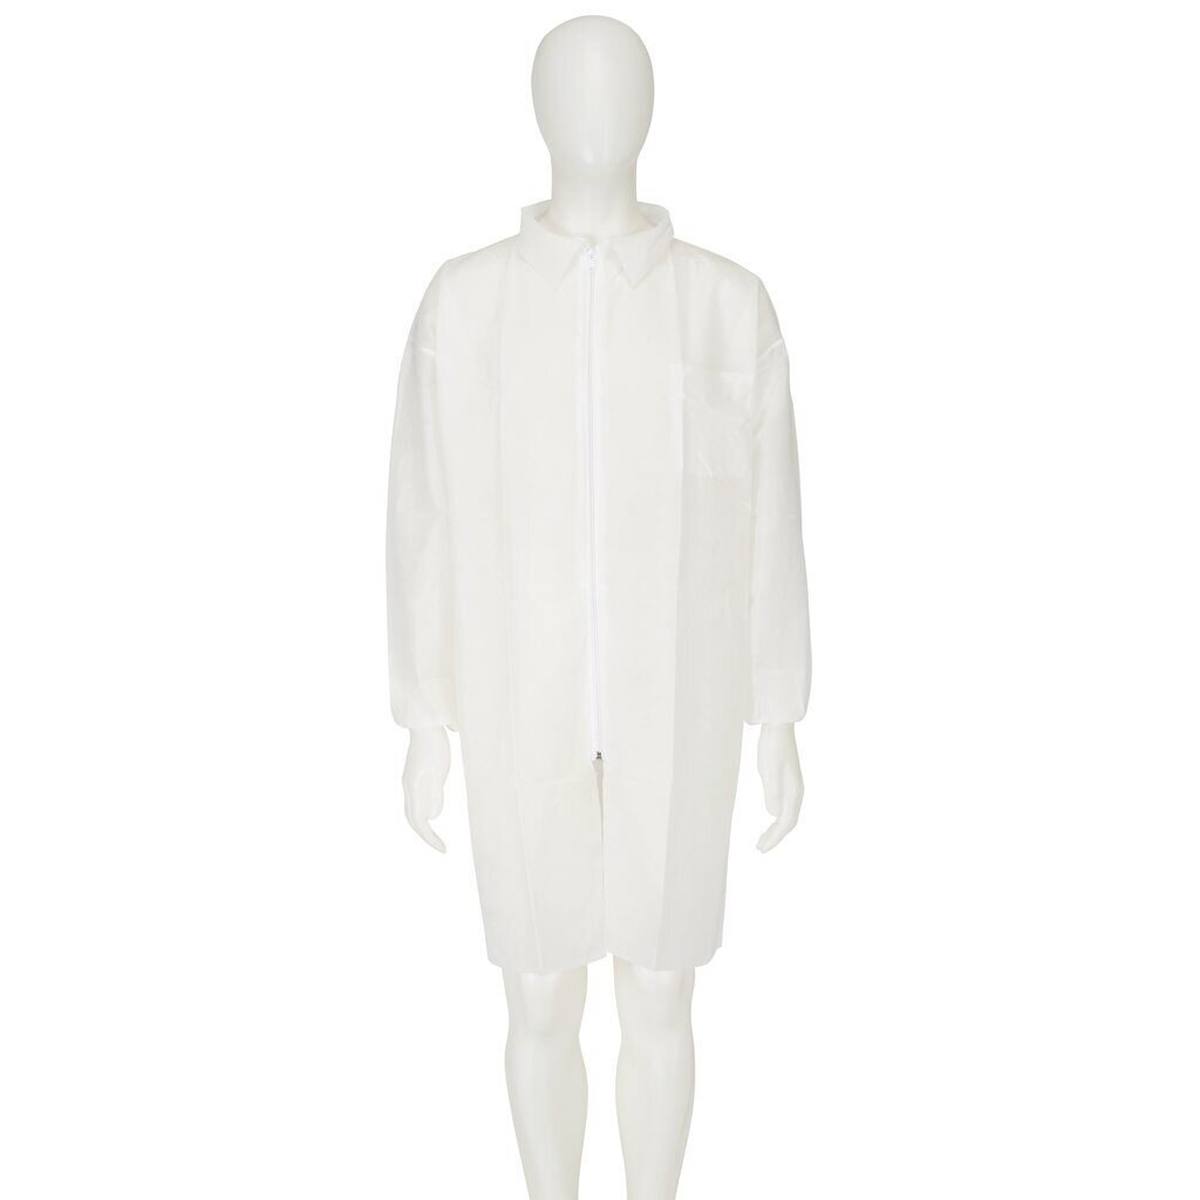 3M 4400 Manteau, blanc, taille 3XL, matériel 100% polypropylène, respirant, très léger, avec fermeture éclair